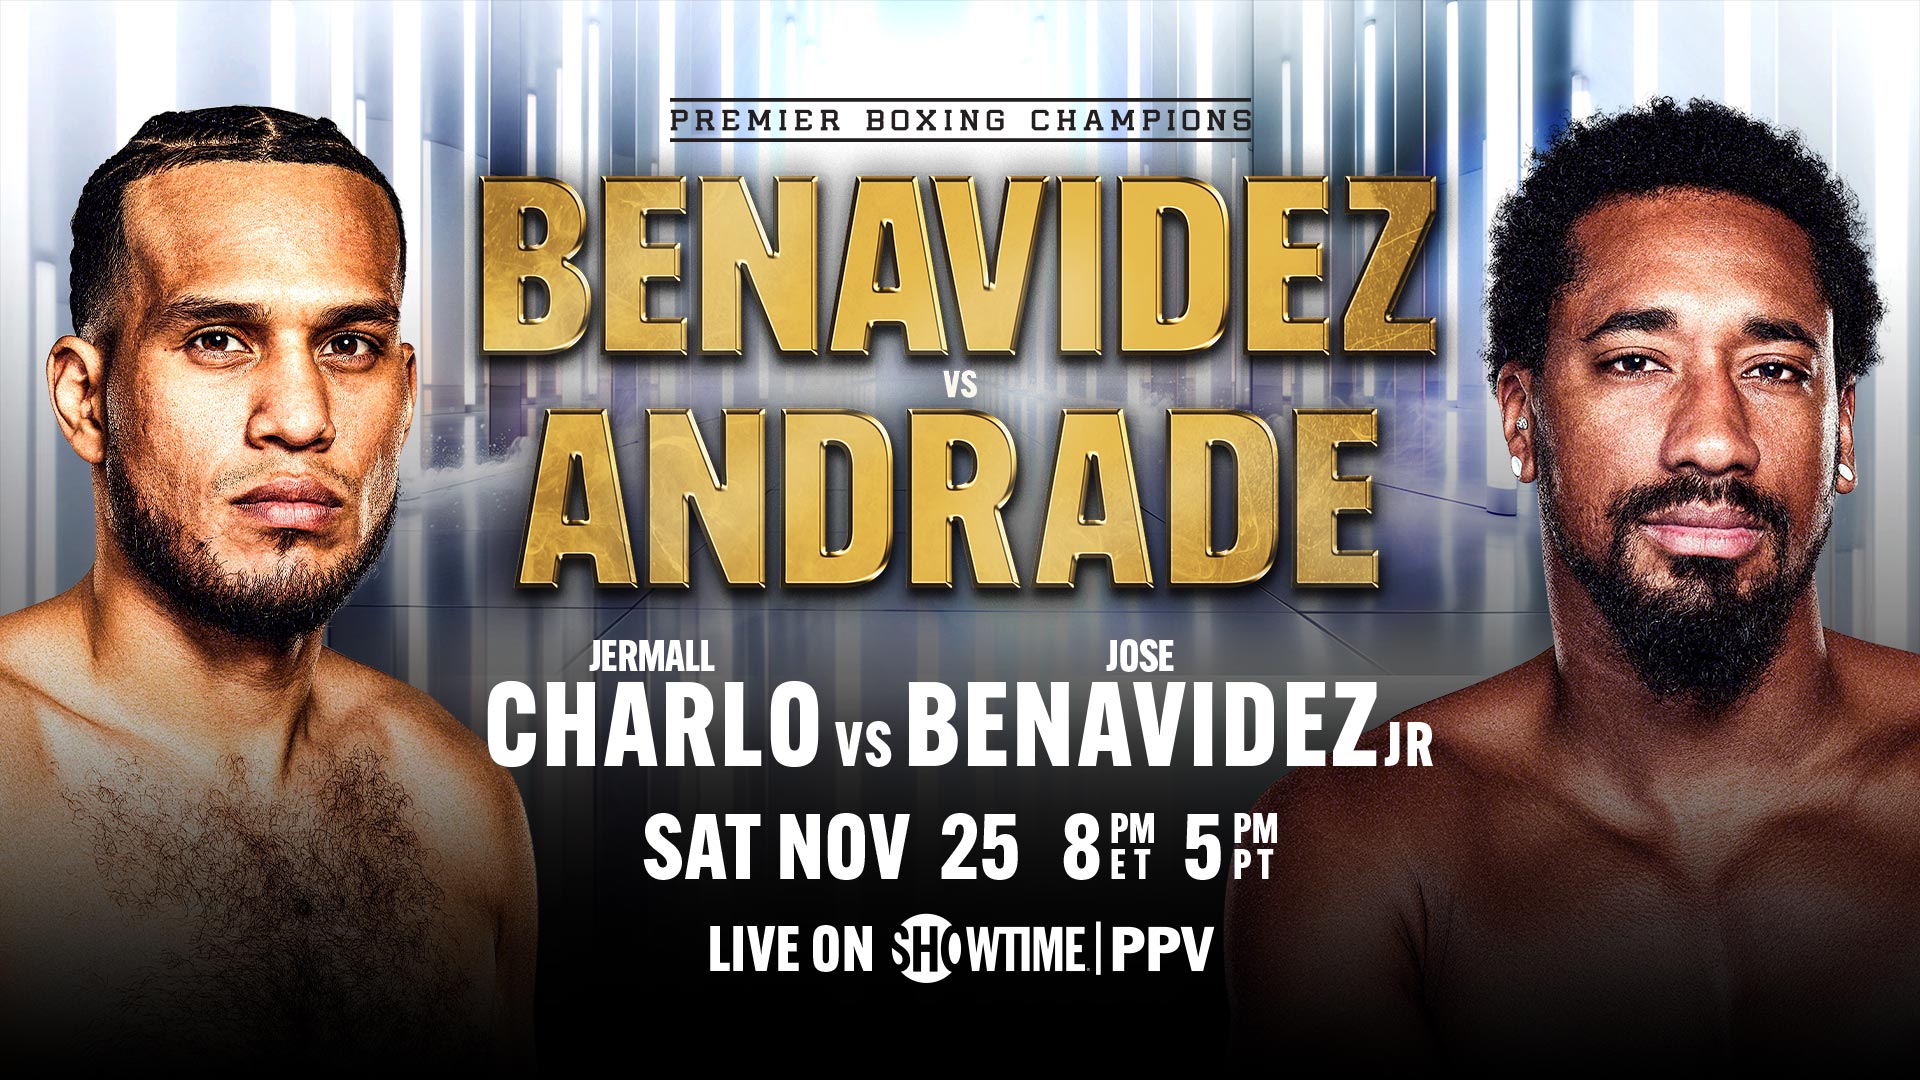 Benavidez domine Andrade